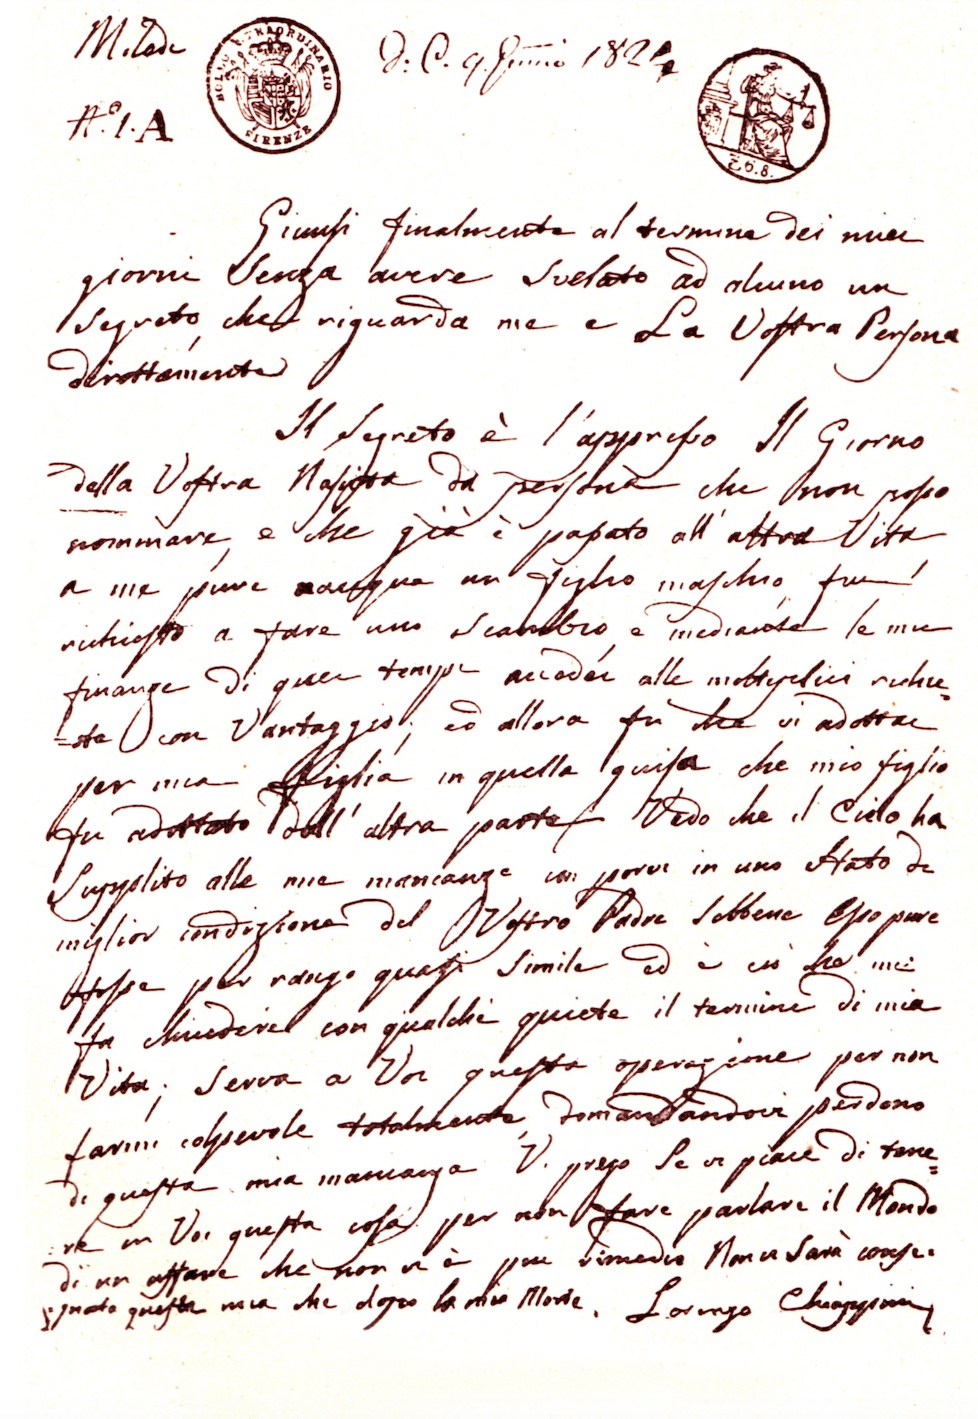 Lettera postuma di Lorenzo Chiappini alla figlia (presso Archivio Notarile di Firenze;
fonte: R. Zanelli, op.cit., p. 50)